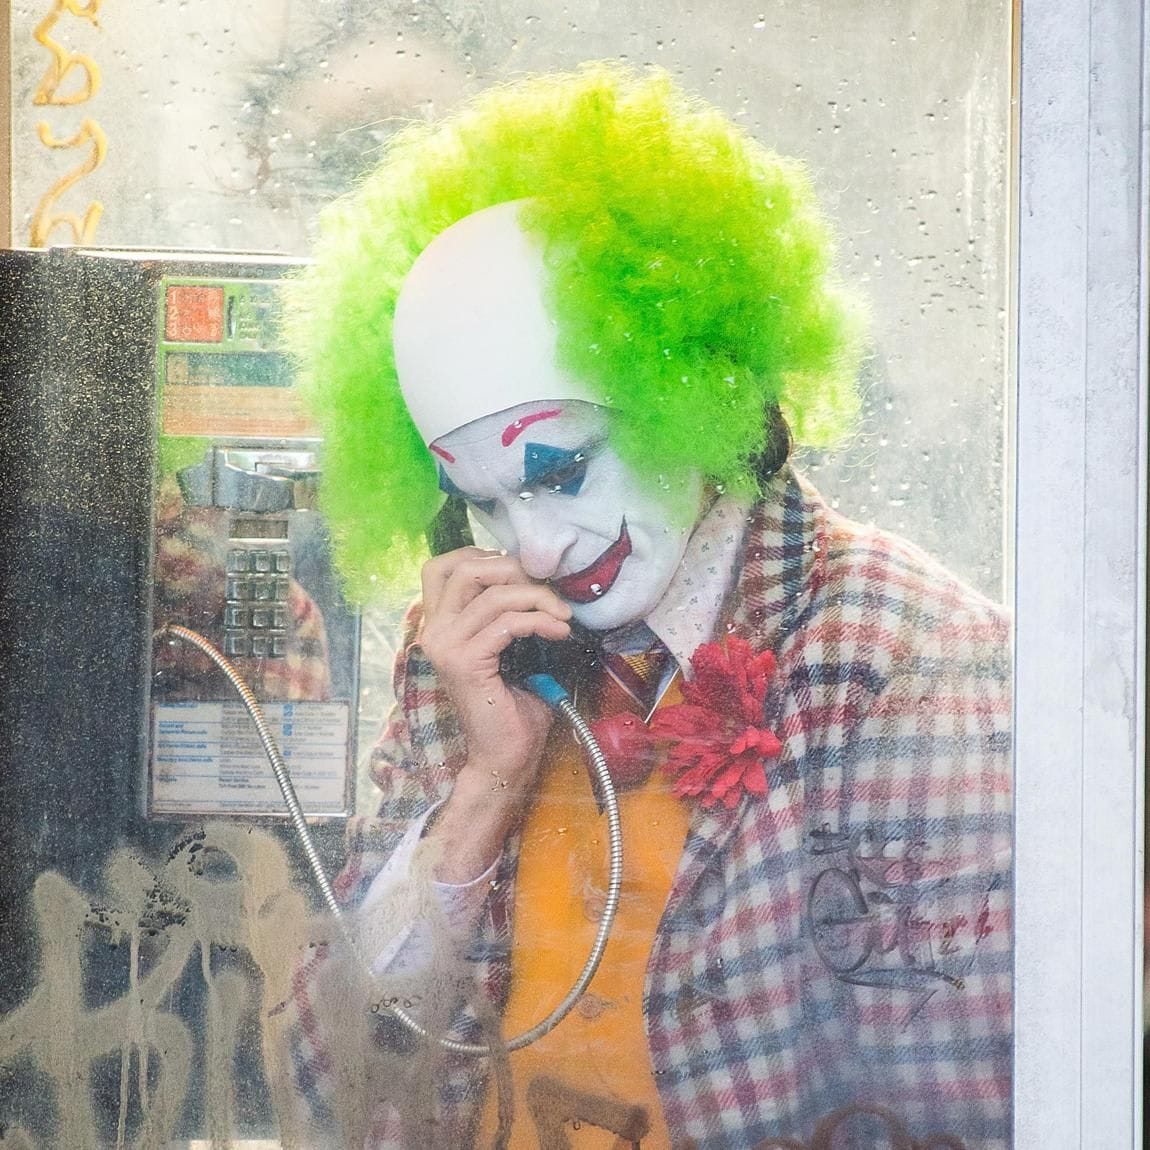 Joaquin Phoenix is seen filming a scene for 'Joker' in Brooklyn on September 24, 2018